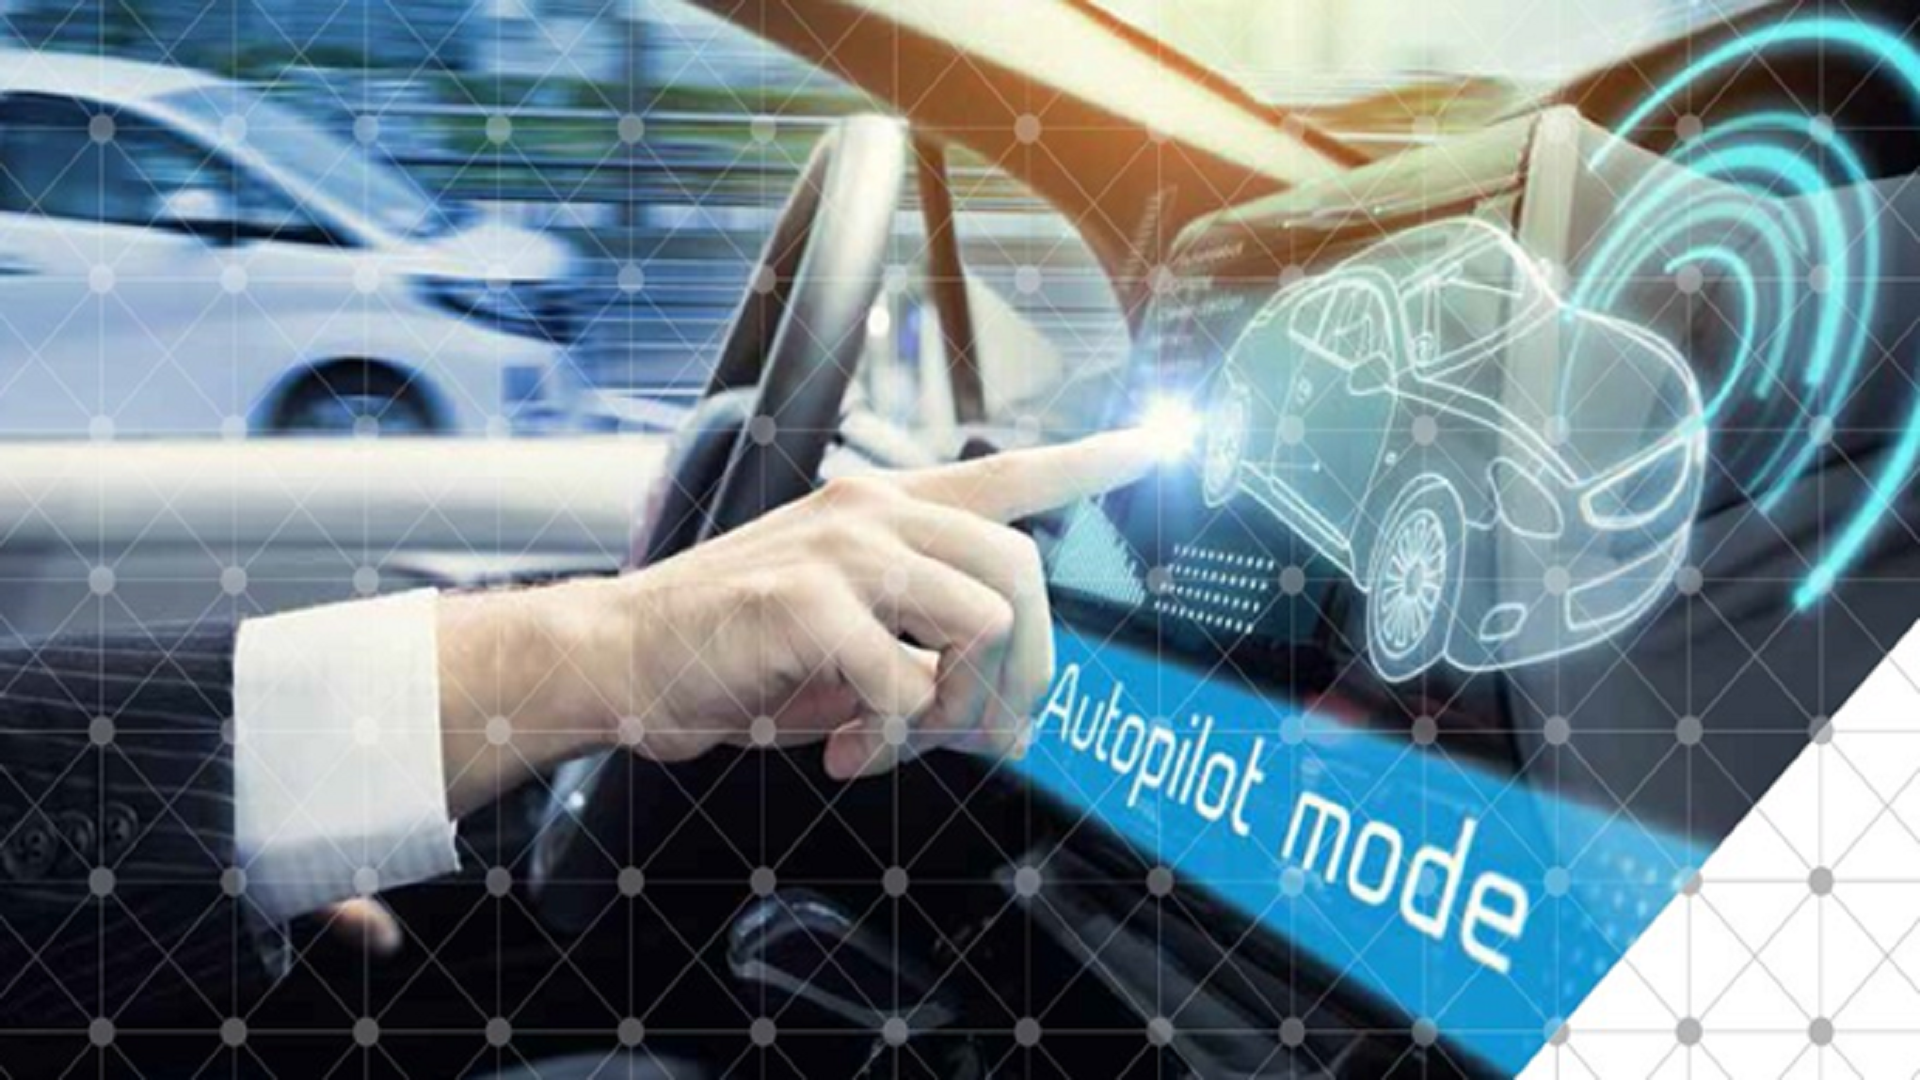 Auto autonome e GNSS: verso nuovi modelli di mobilità